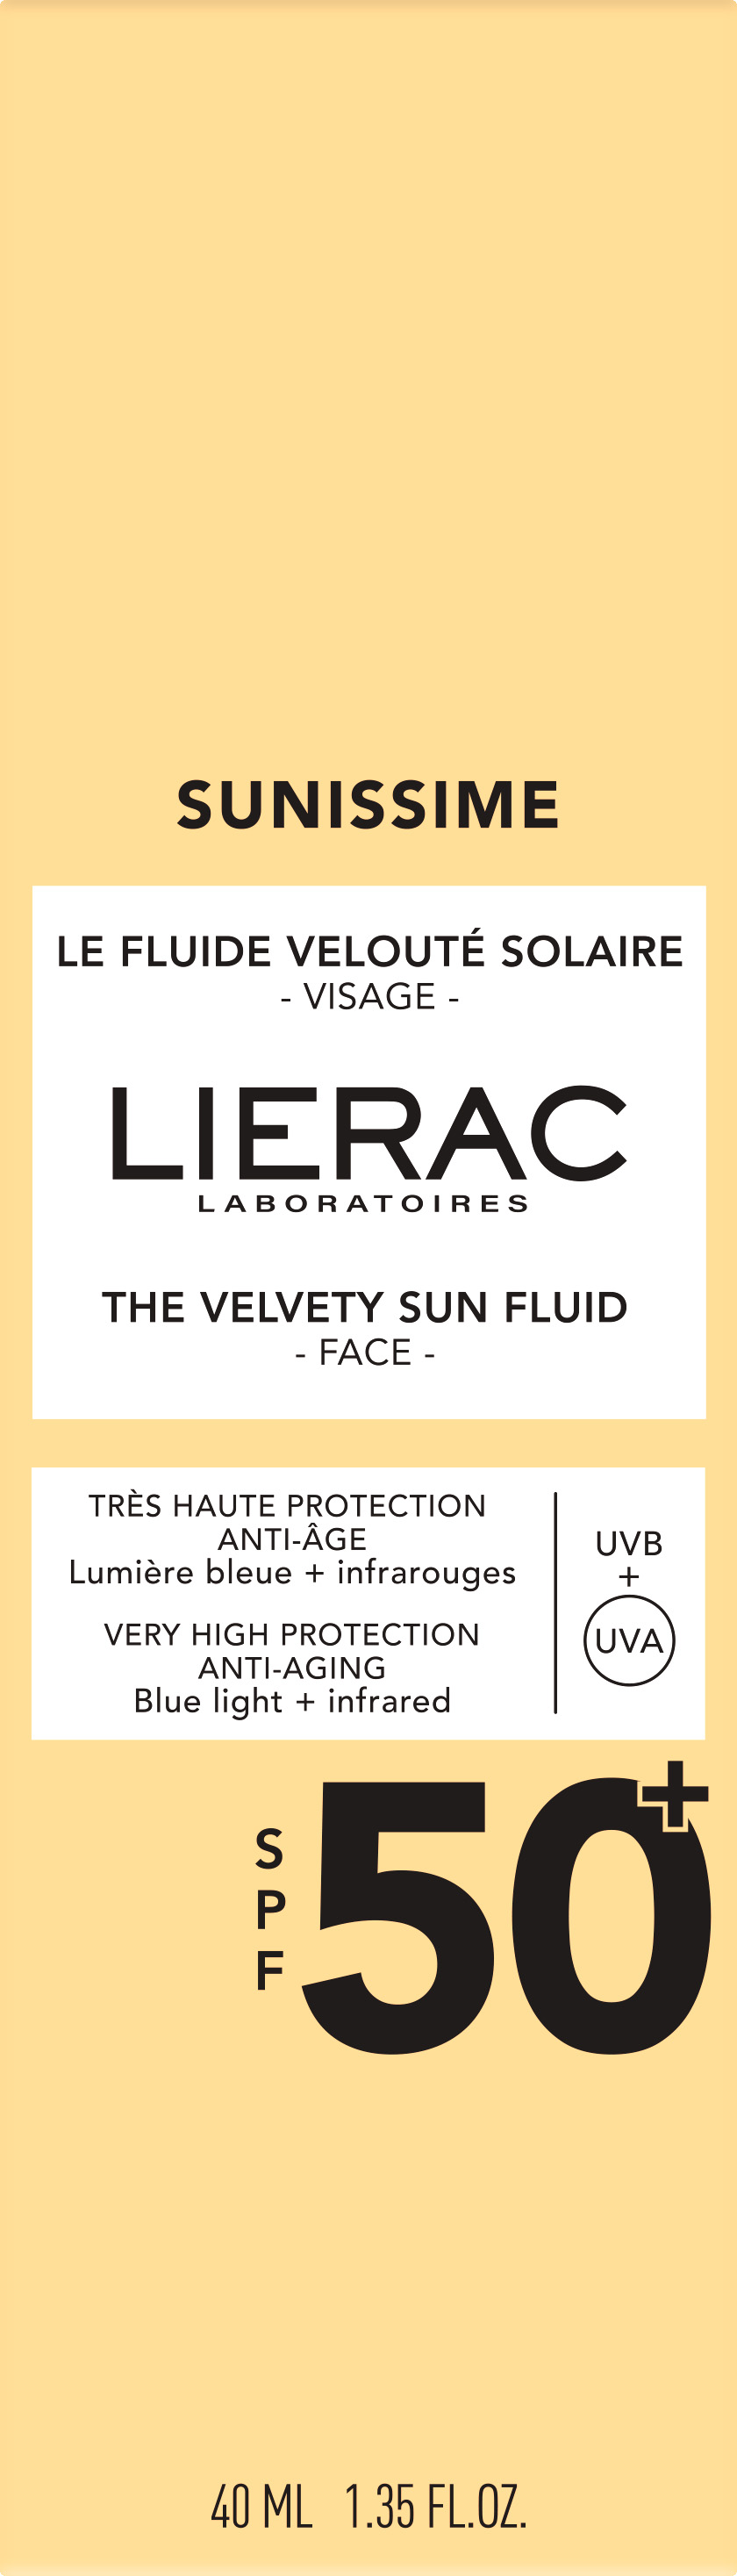 Сонцезахисний флюїд Lierac Sunissime SPF 50+ для обличчя 40 мл - фото 2